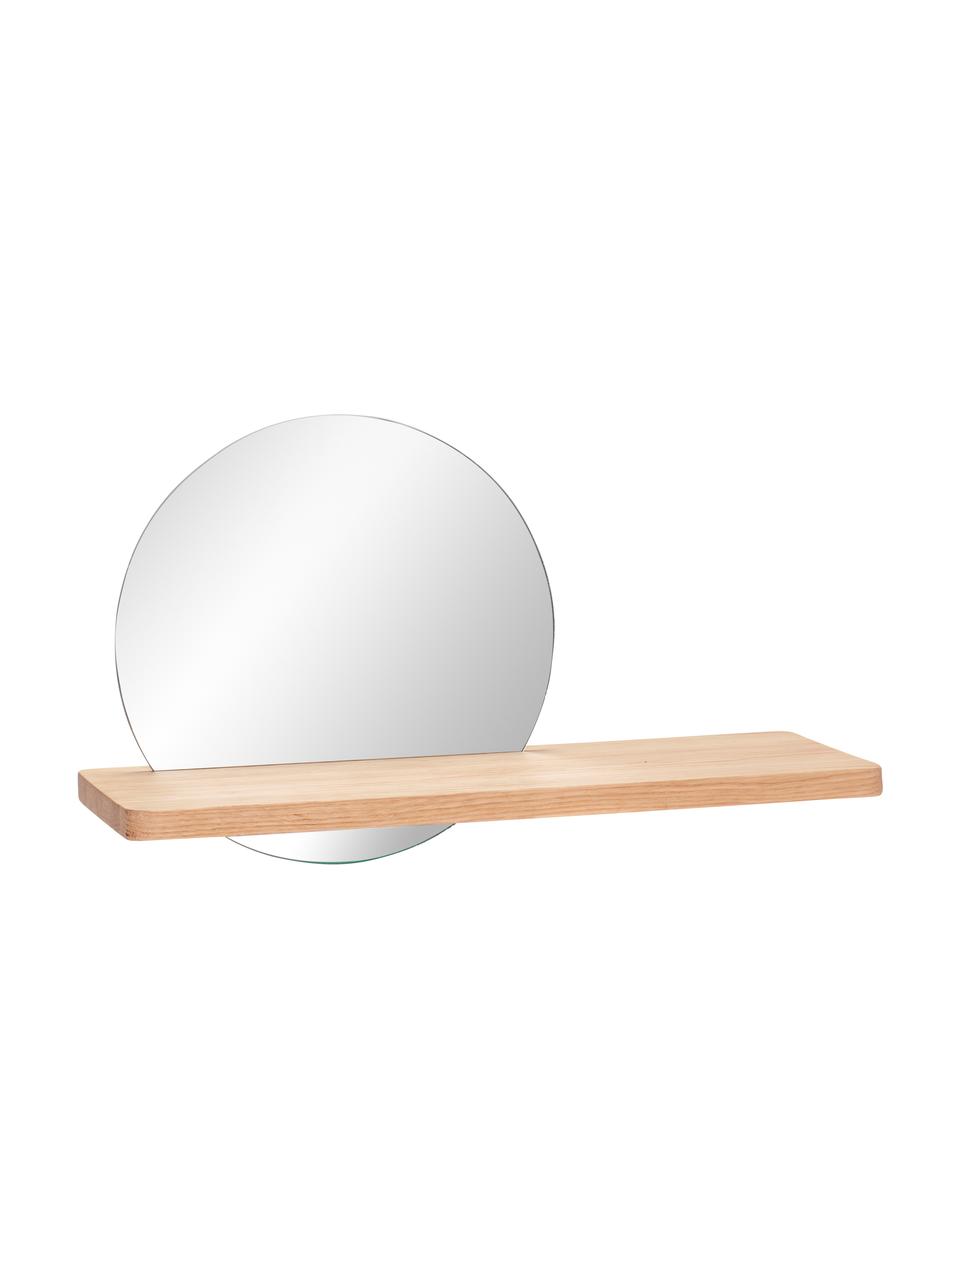 Okrągłe lustro ścienne z półką Balance, Beżowy, S 52 x W 26 cm